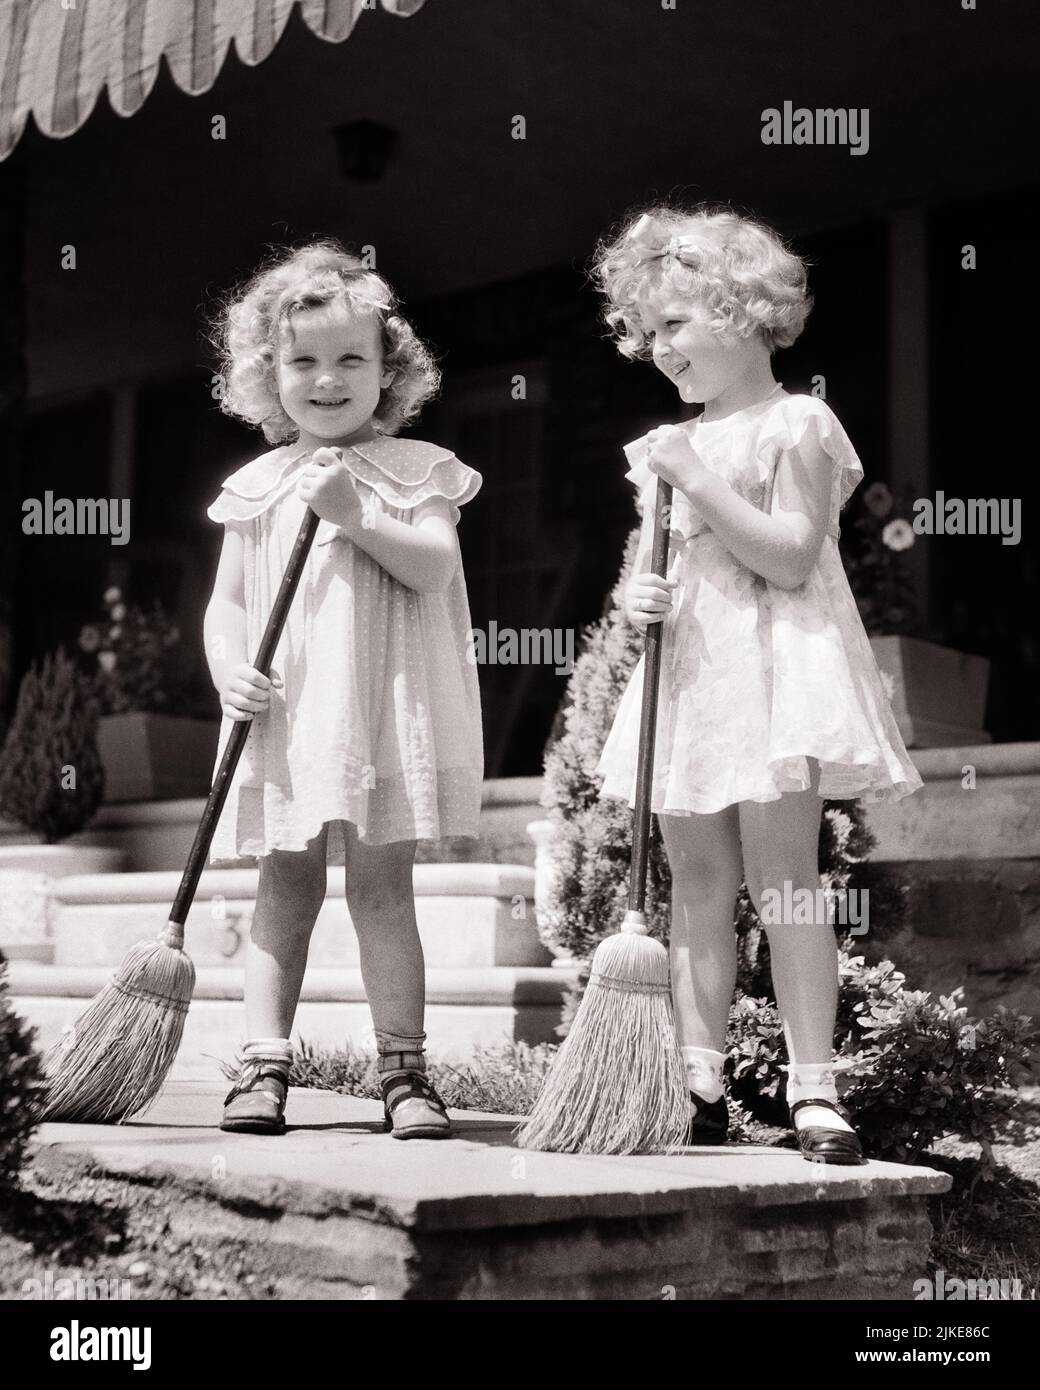 Vintage brooms immagini e fotografie stock ad alta risoluzione - Alamy